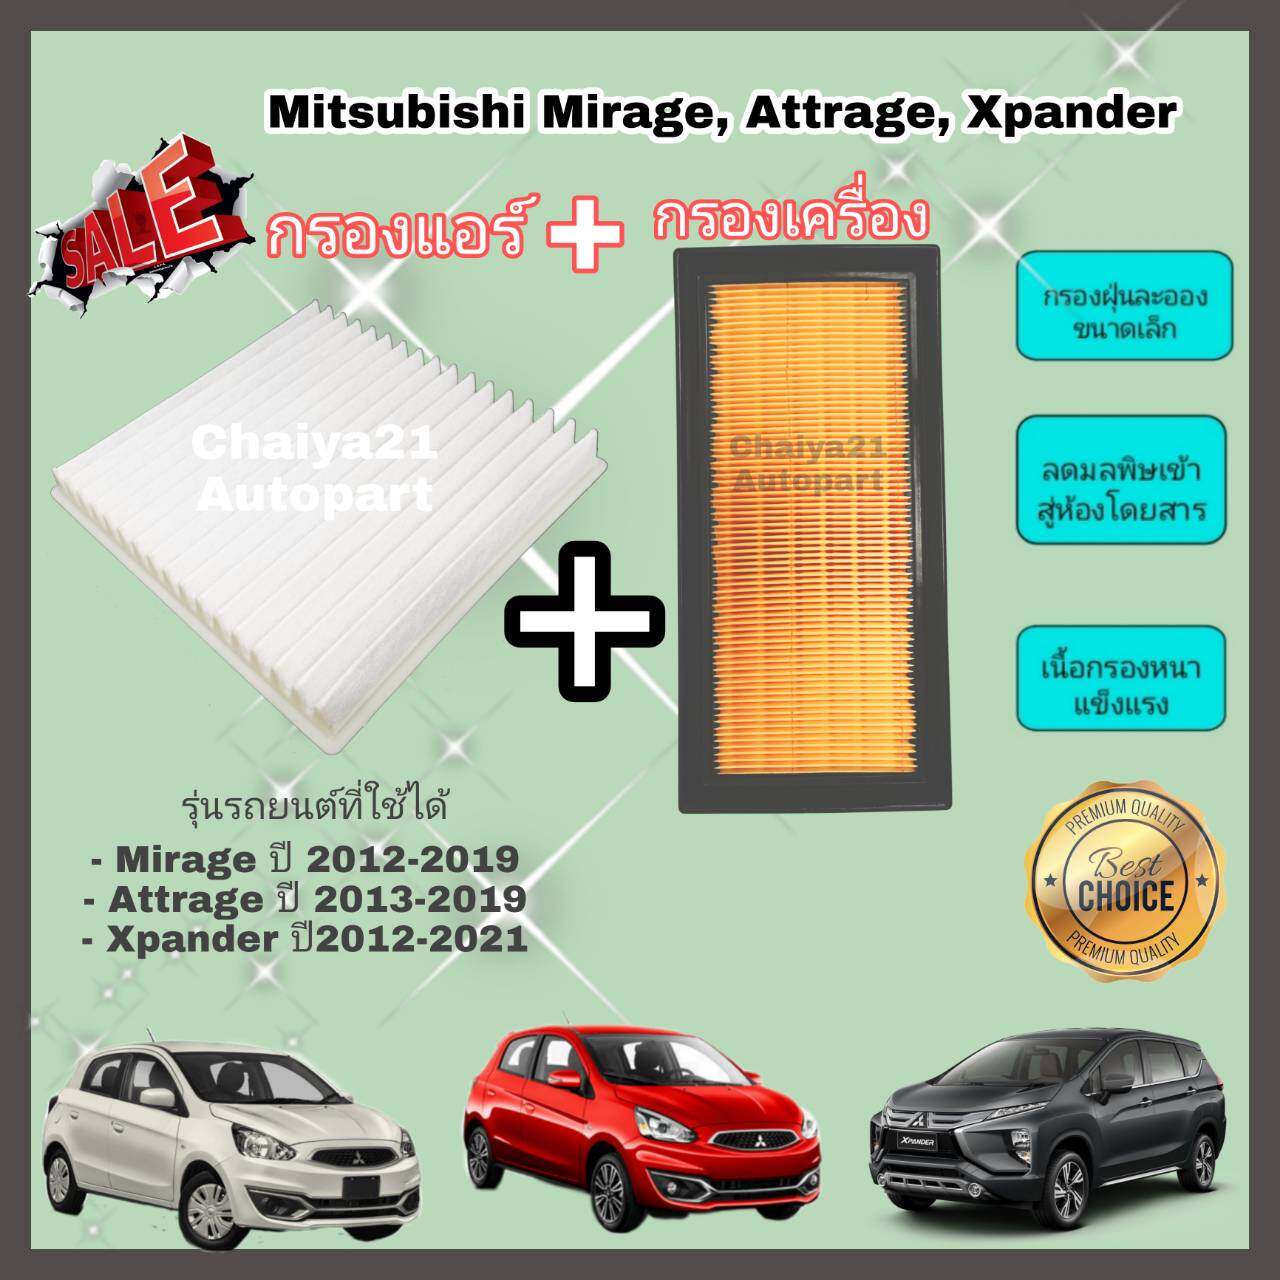 ซื้อคู่คุ้มกว่า กรองอากาศ+กรองแอร์ Mitsubishi Mirage Attrage Xpander มิตซูบิชิ มิราจ แอททราจ เอ็กซ์แพนเดอร์ ปี 2012-2019